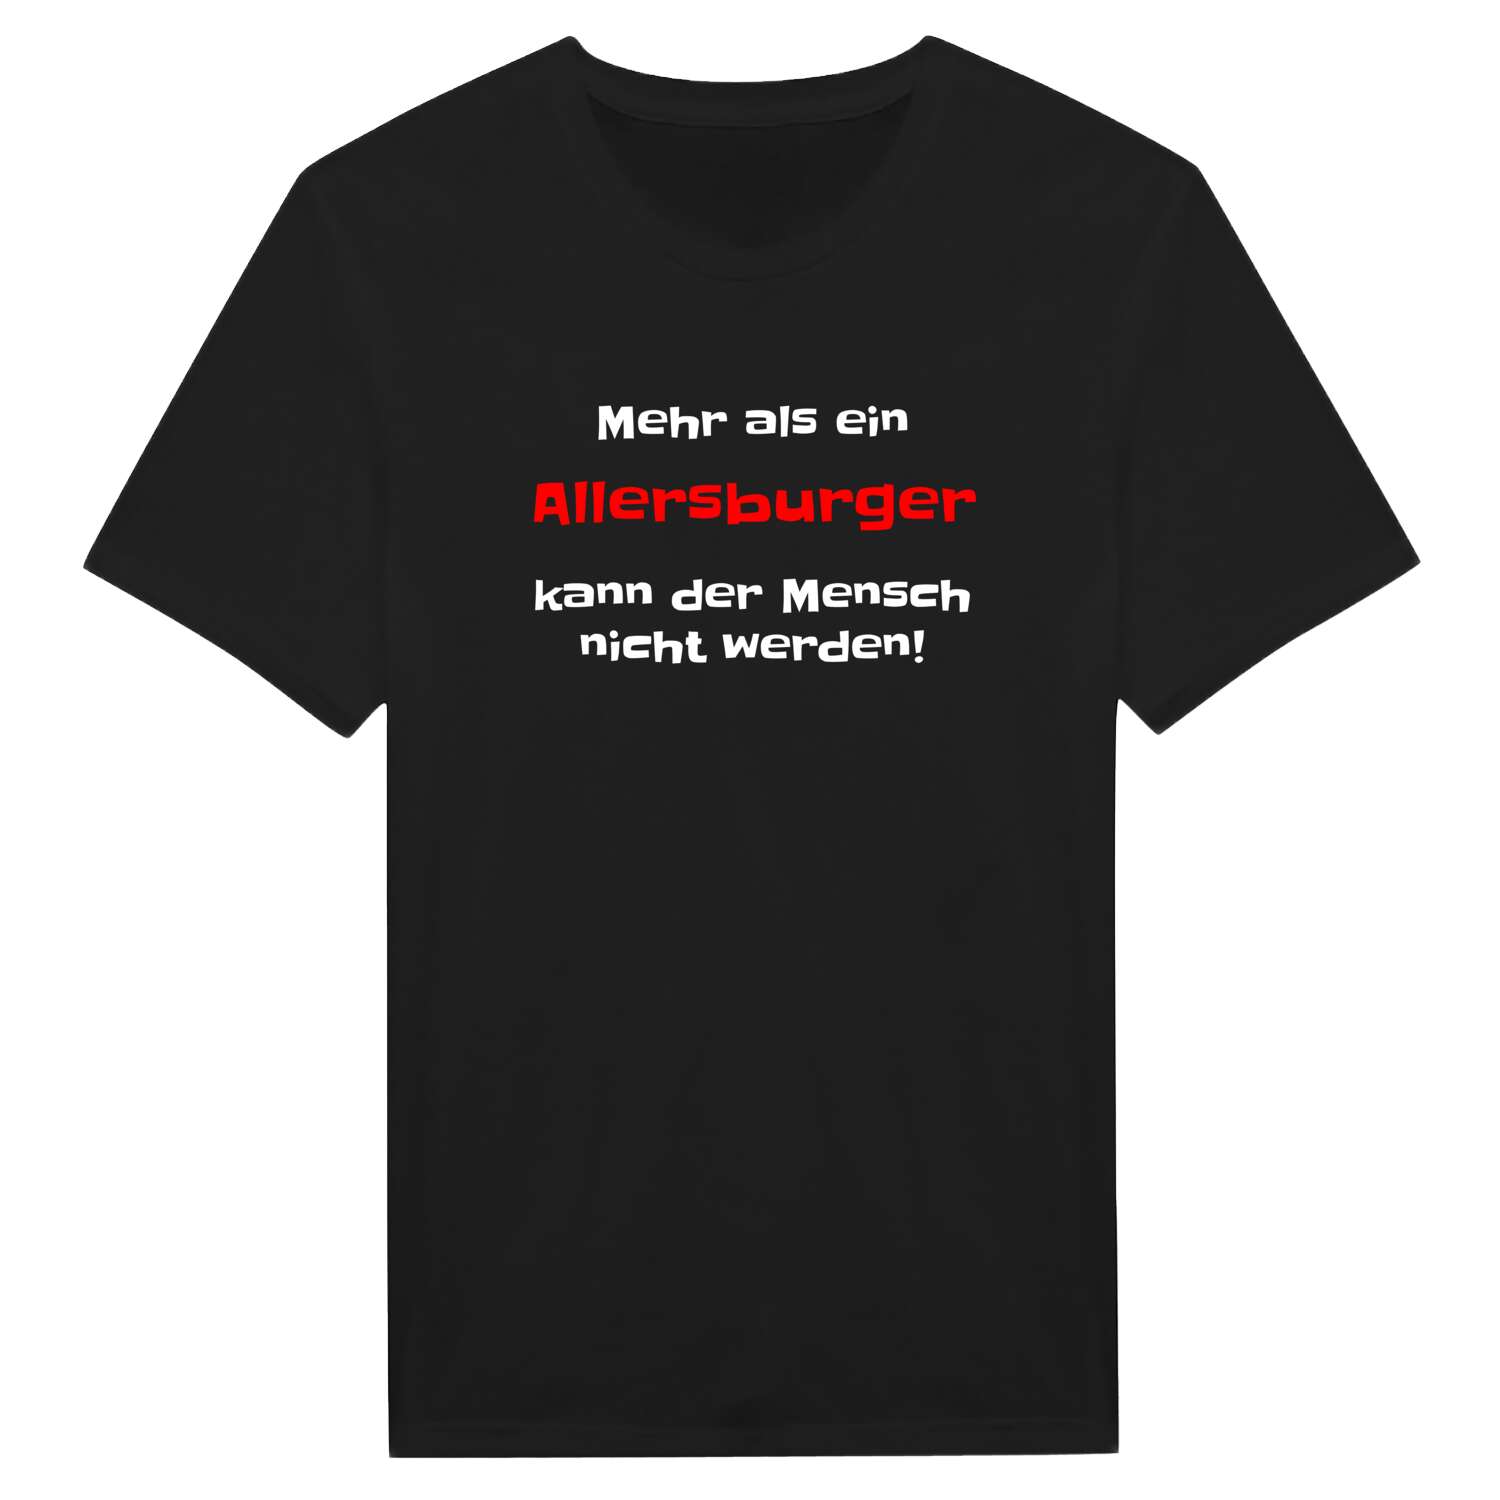 Allersburg T-Shirt »Mehr als ein«